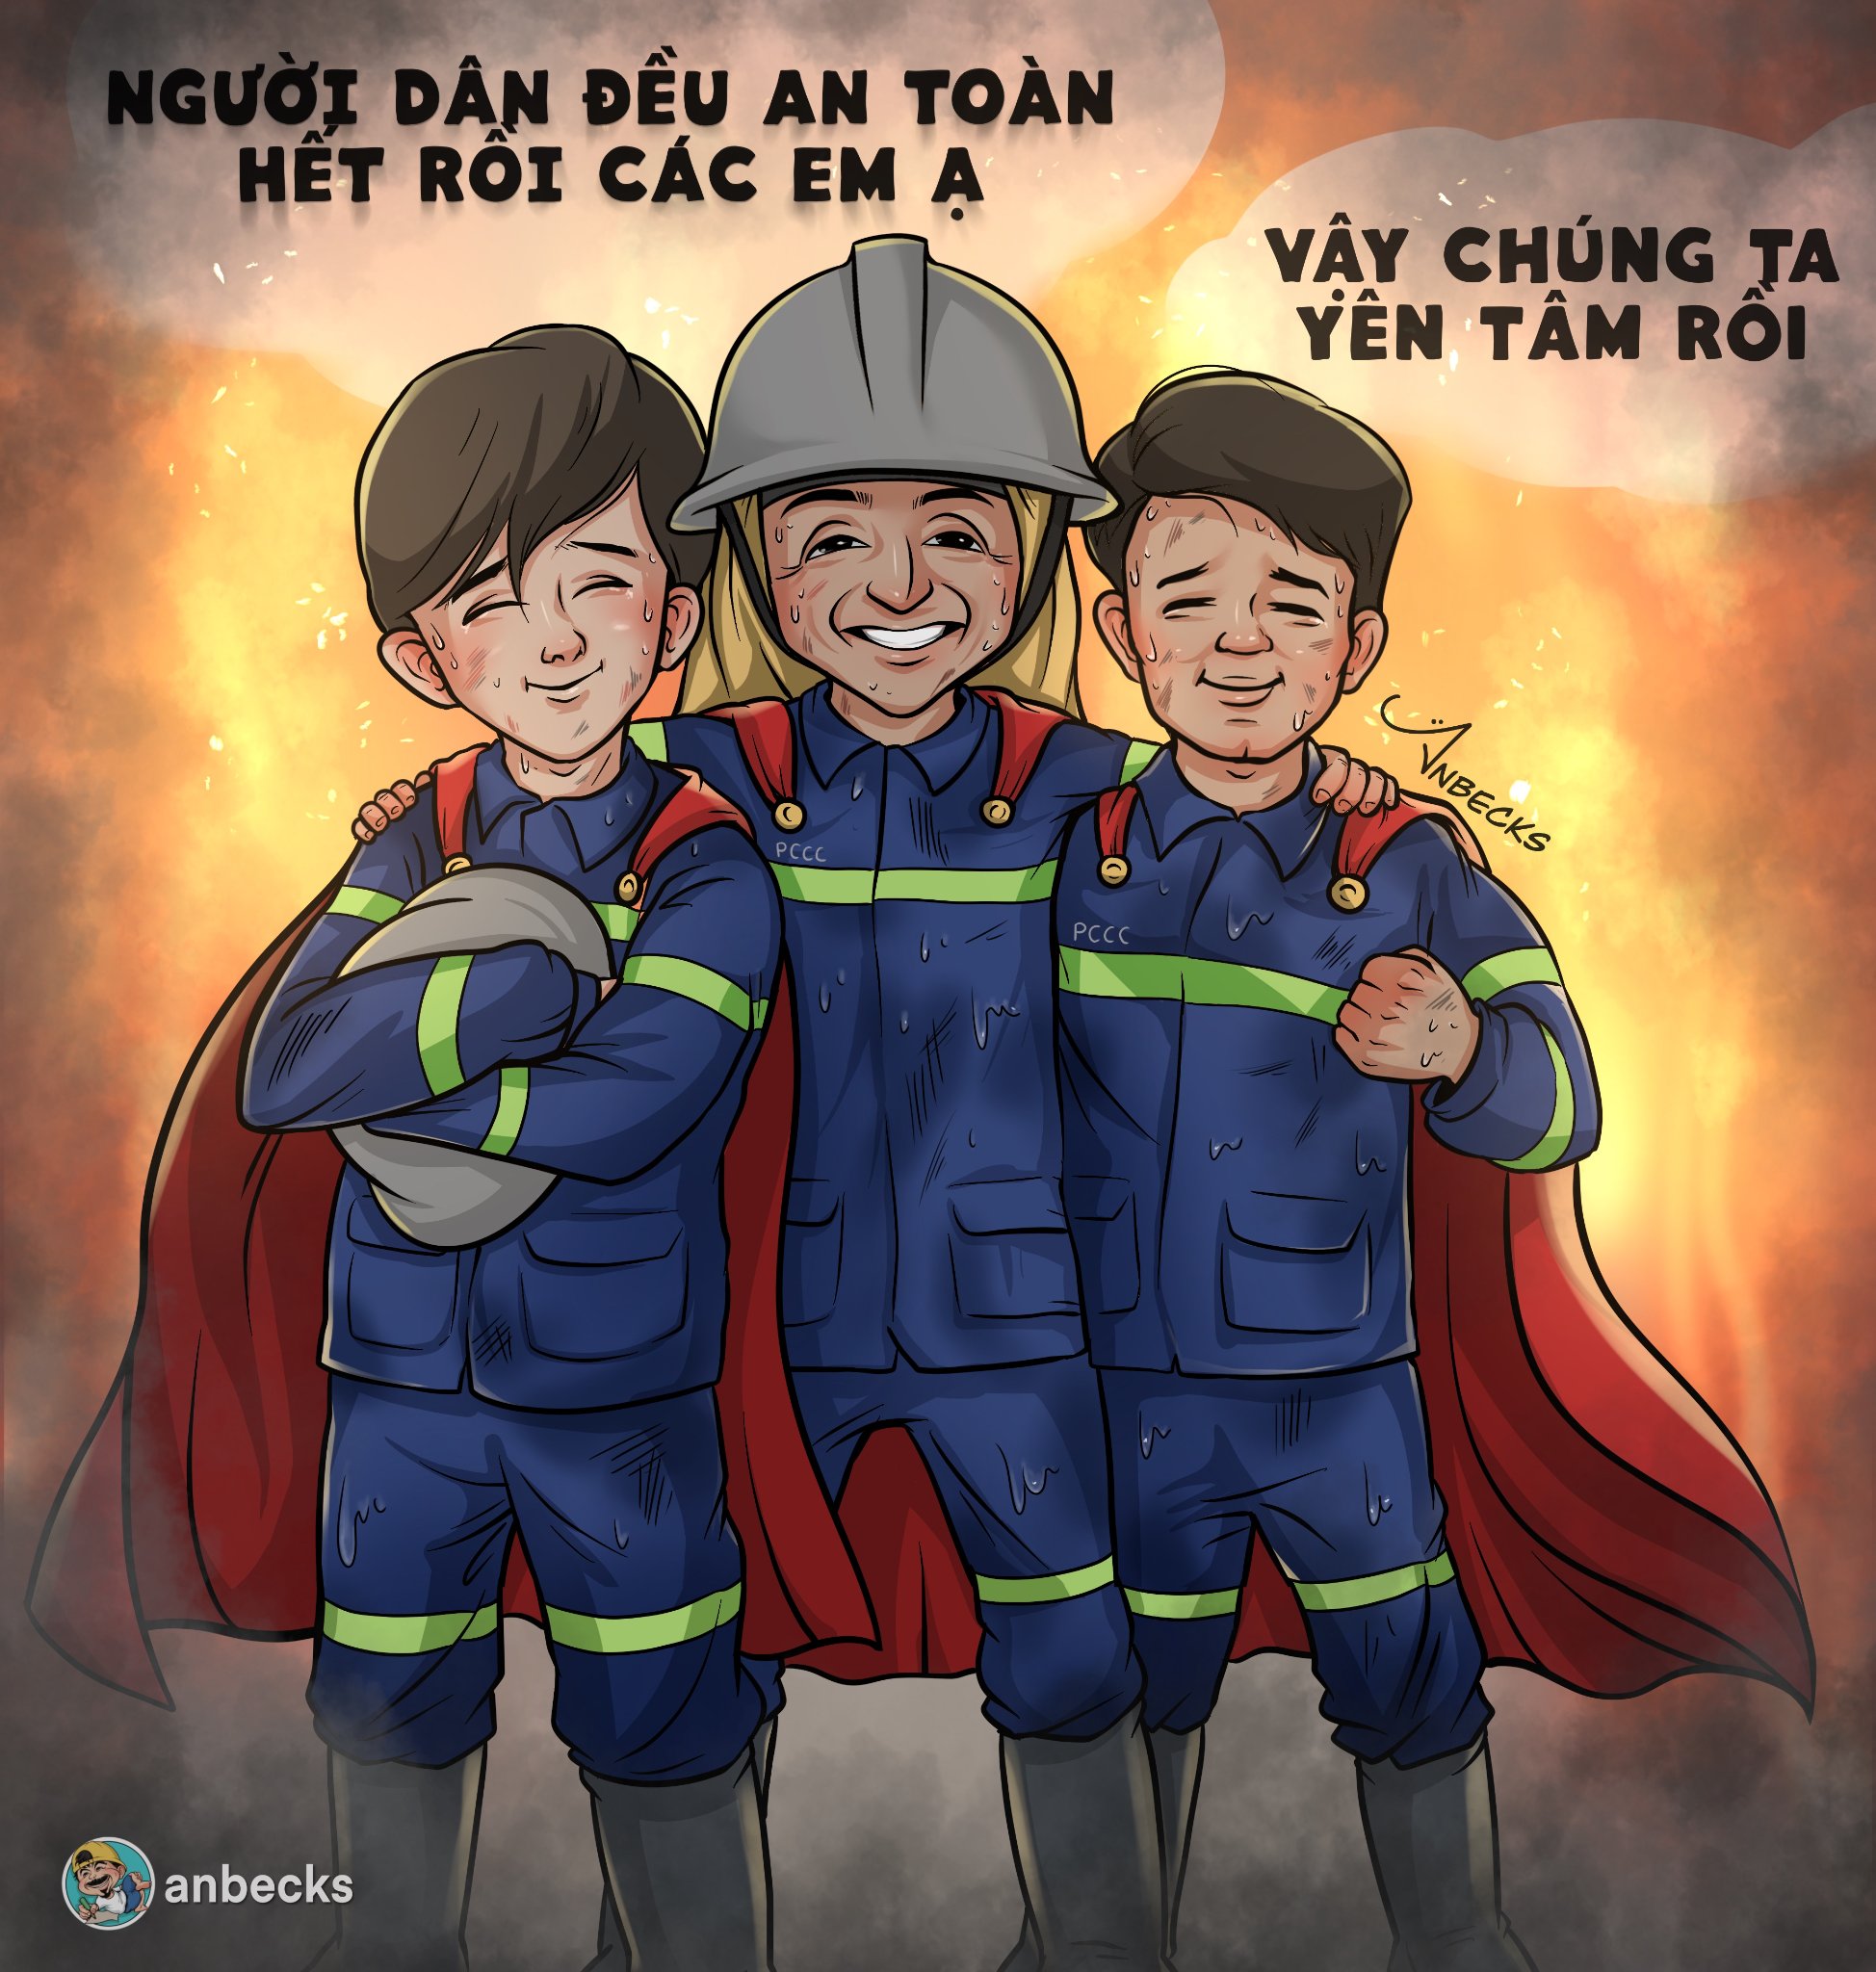 Tri ân 3 người lính cứu hỏa chẳng thể quay về: Cảm ơn vì sự hy sinh cao cả